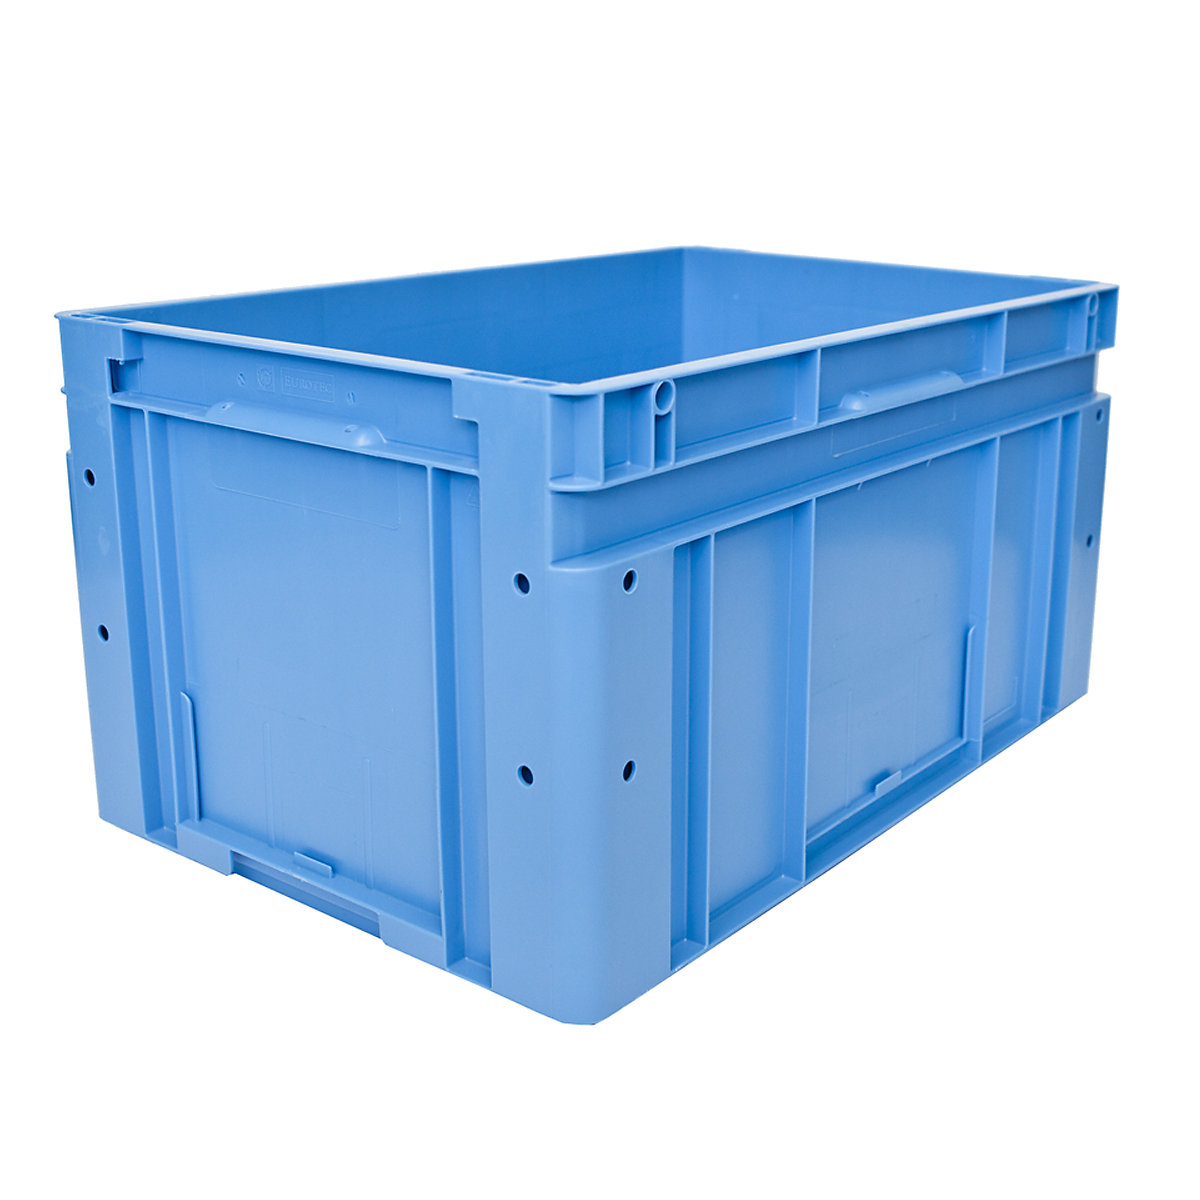 Euronorm-Stapelbehälter, Außen-LxBxH 600 x 400 x 320 mm, blau